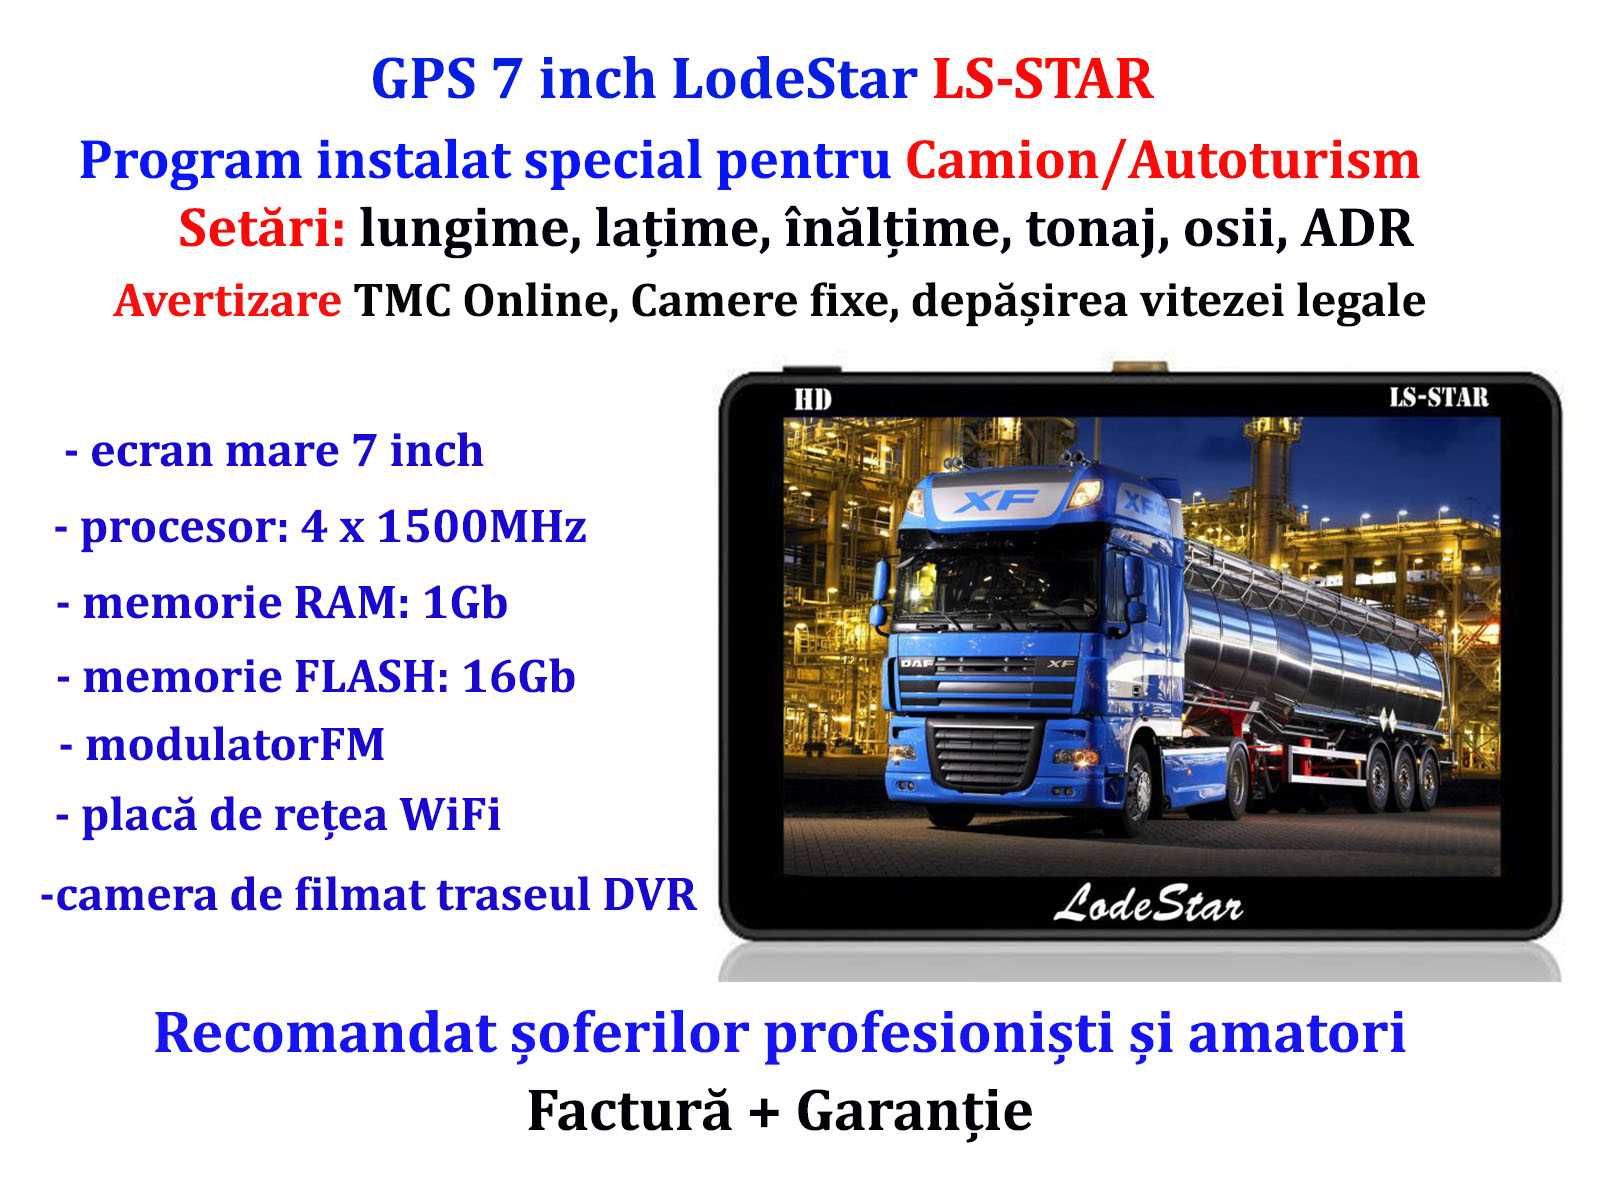 Navigatie GPS 7"HD Camion Full Europa, TMC, WiFi, camera filmat traseu